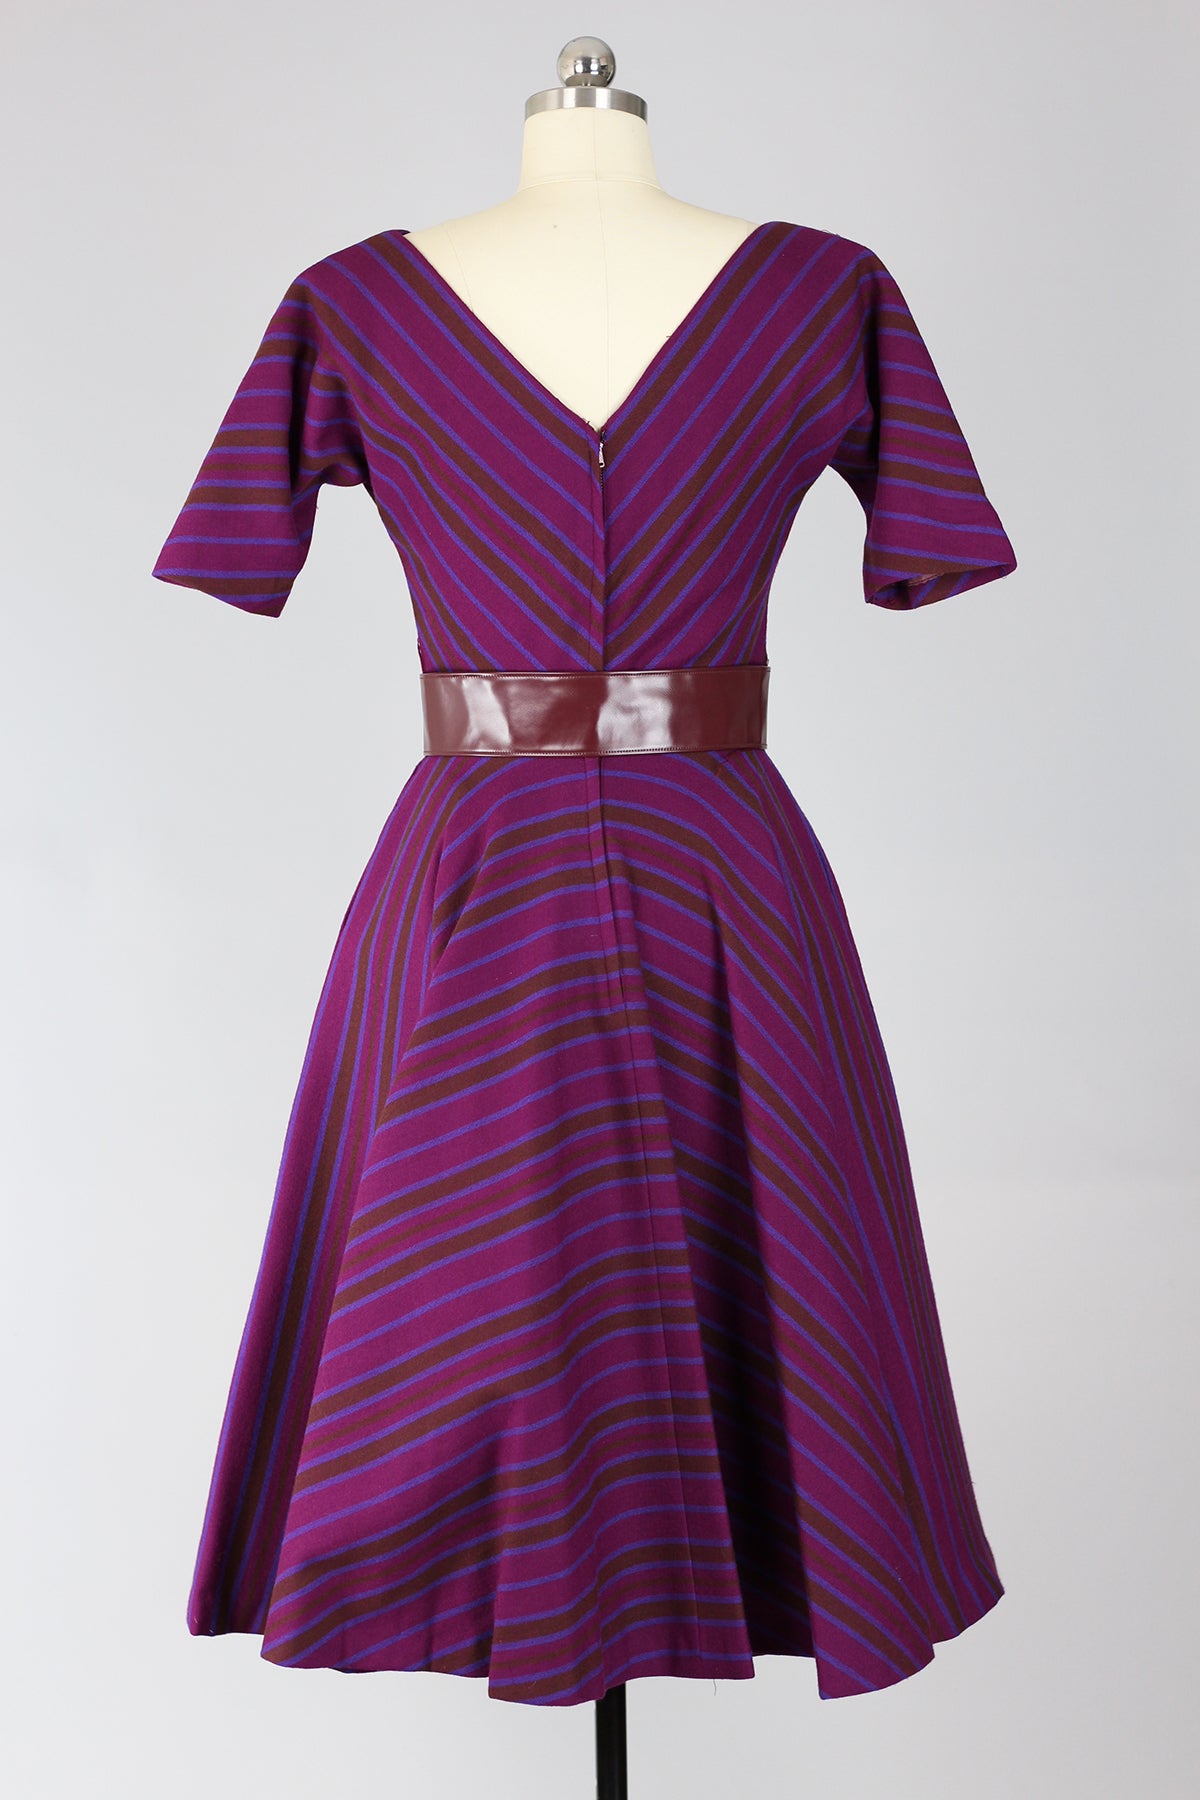 RARE! Incredible Mr. Mort 1950s New Look Plum Wool Stripe Dress